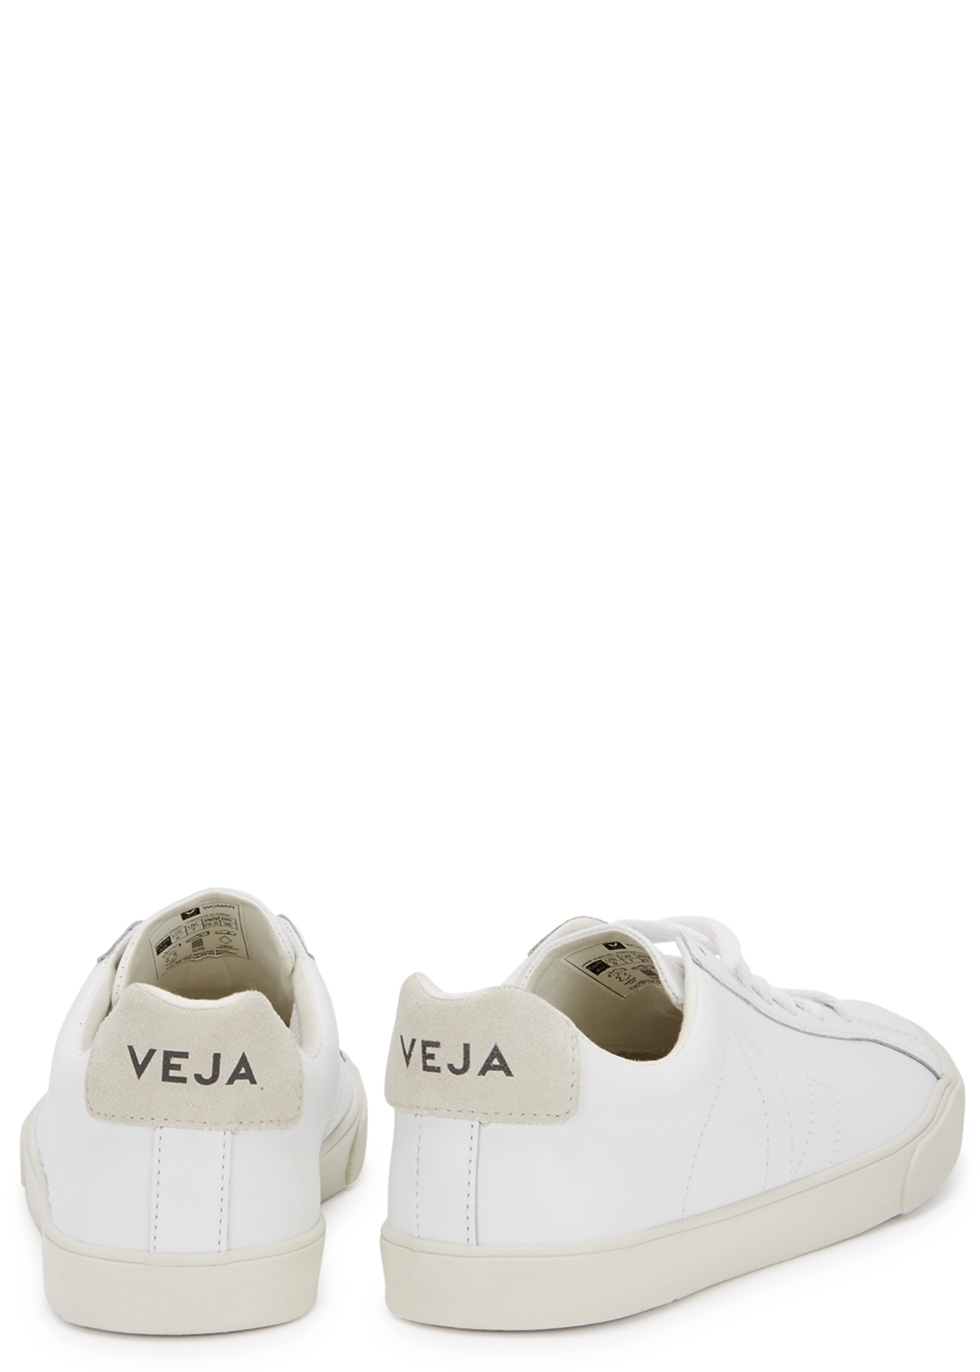 white veja sneakers